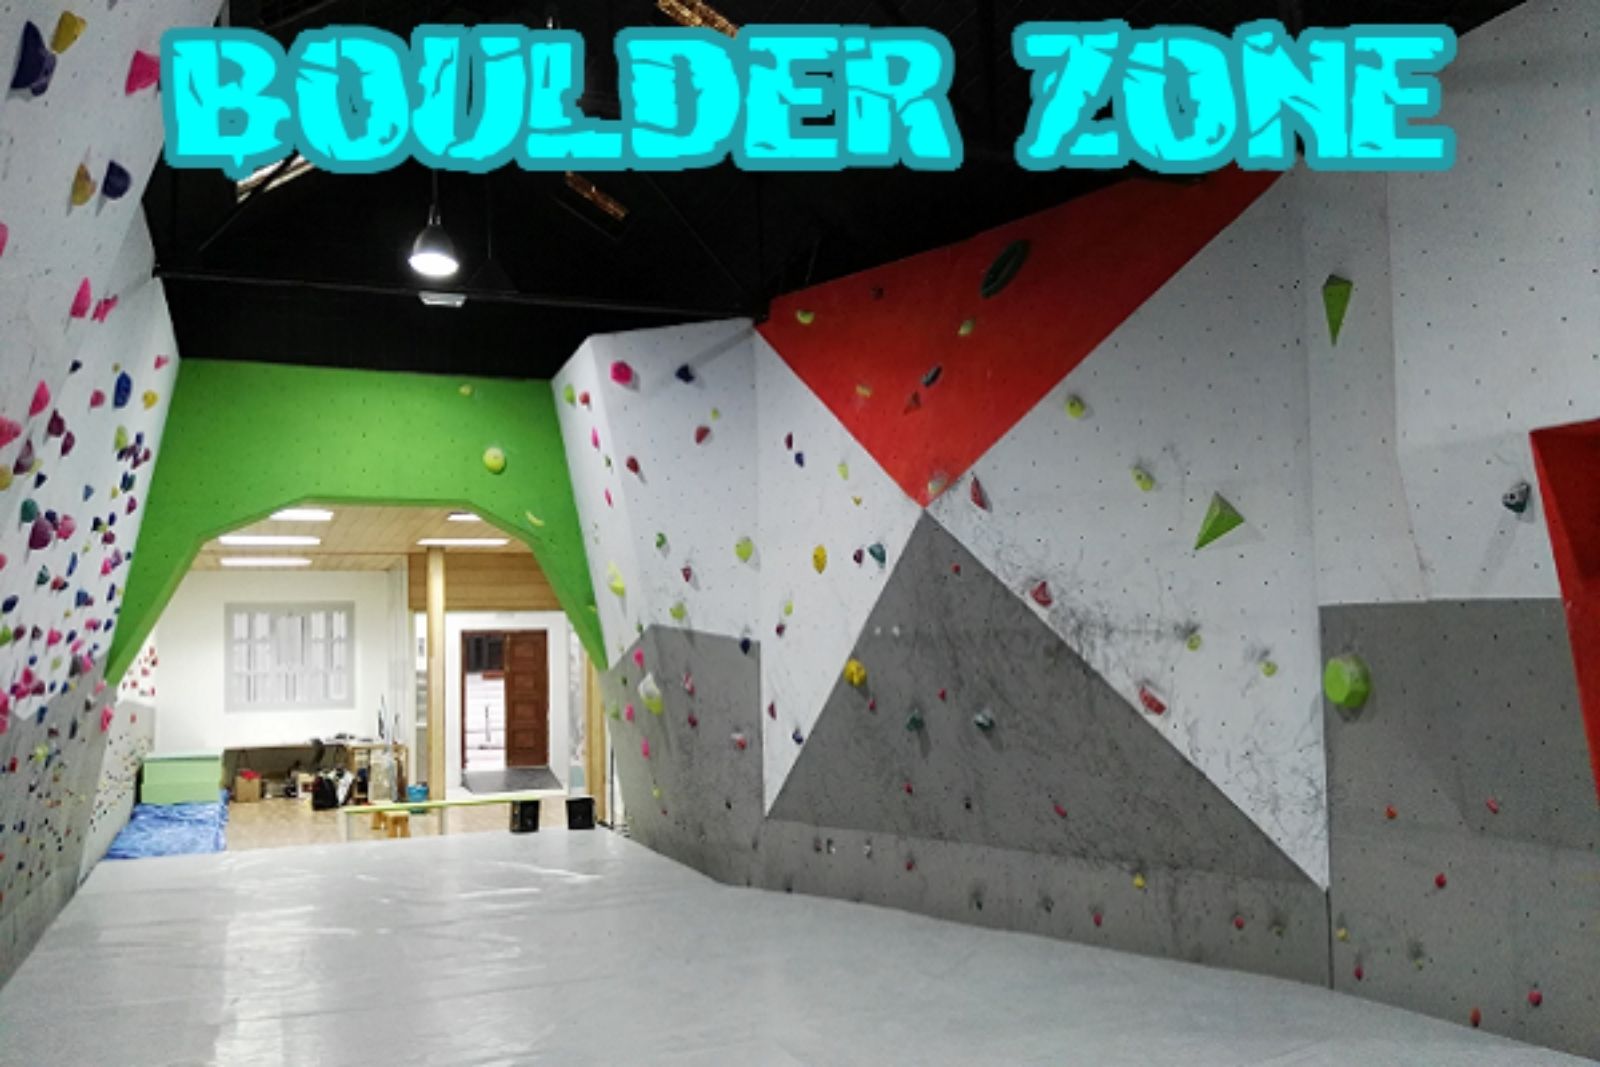 Agencia Astorga alquila un local de casi 500m2 al rocódromo “Boulder Zone”